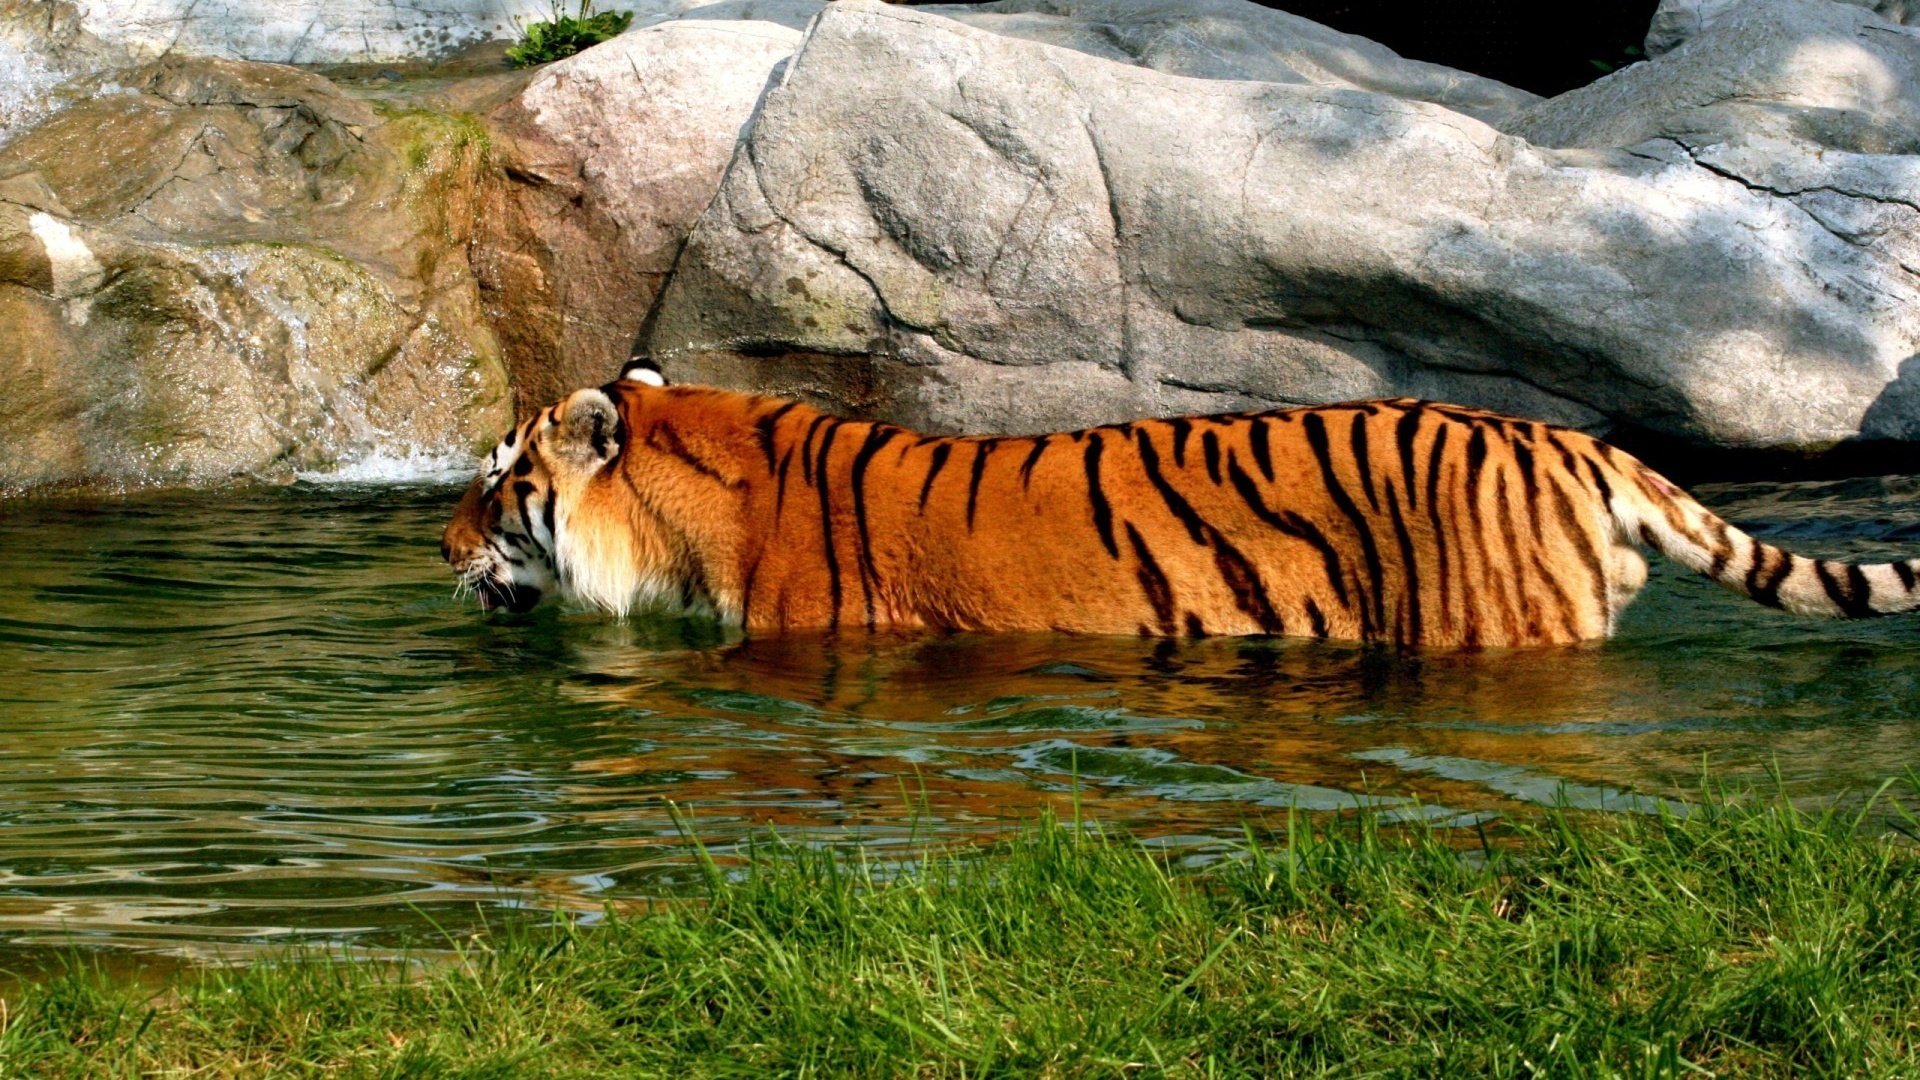 Скачать обои тигр водоем купание Tiger Pond разрешение 1920x1080 2022